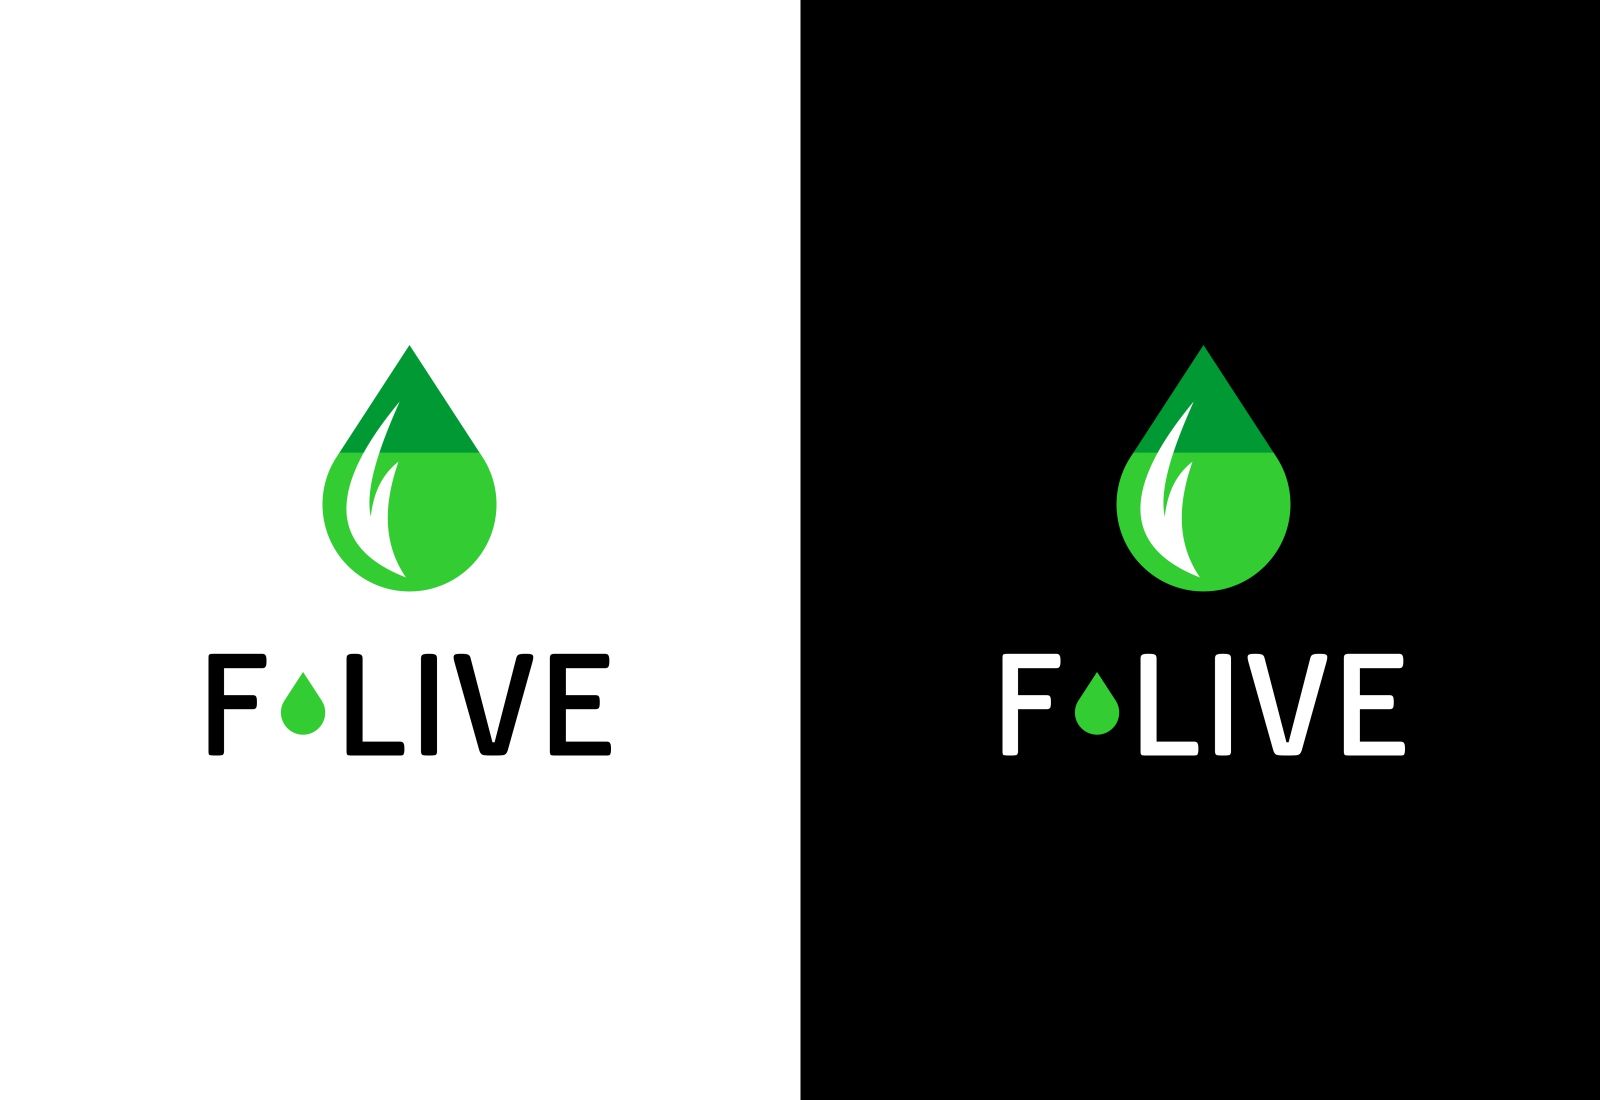 Лого и фирменный стиль для F-Live - дизайнер sasha-plus